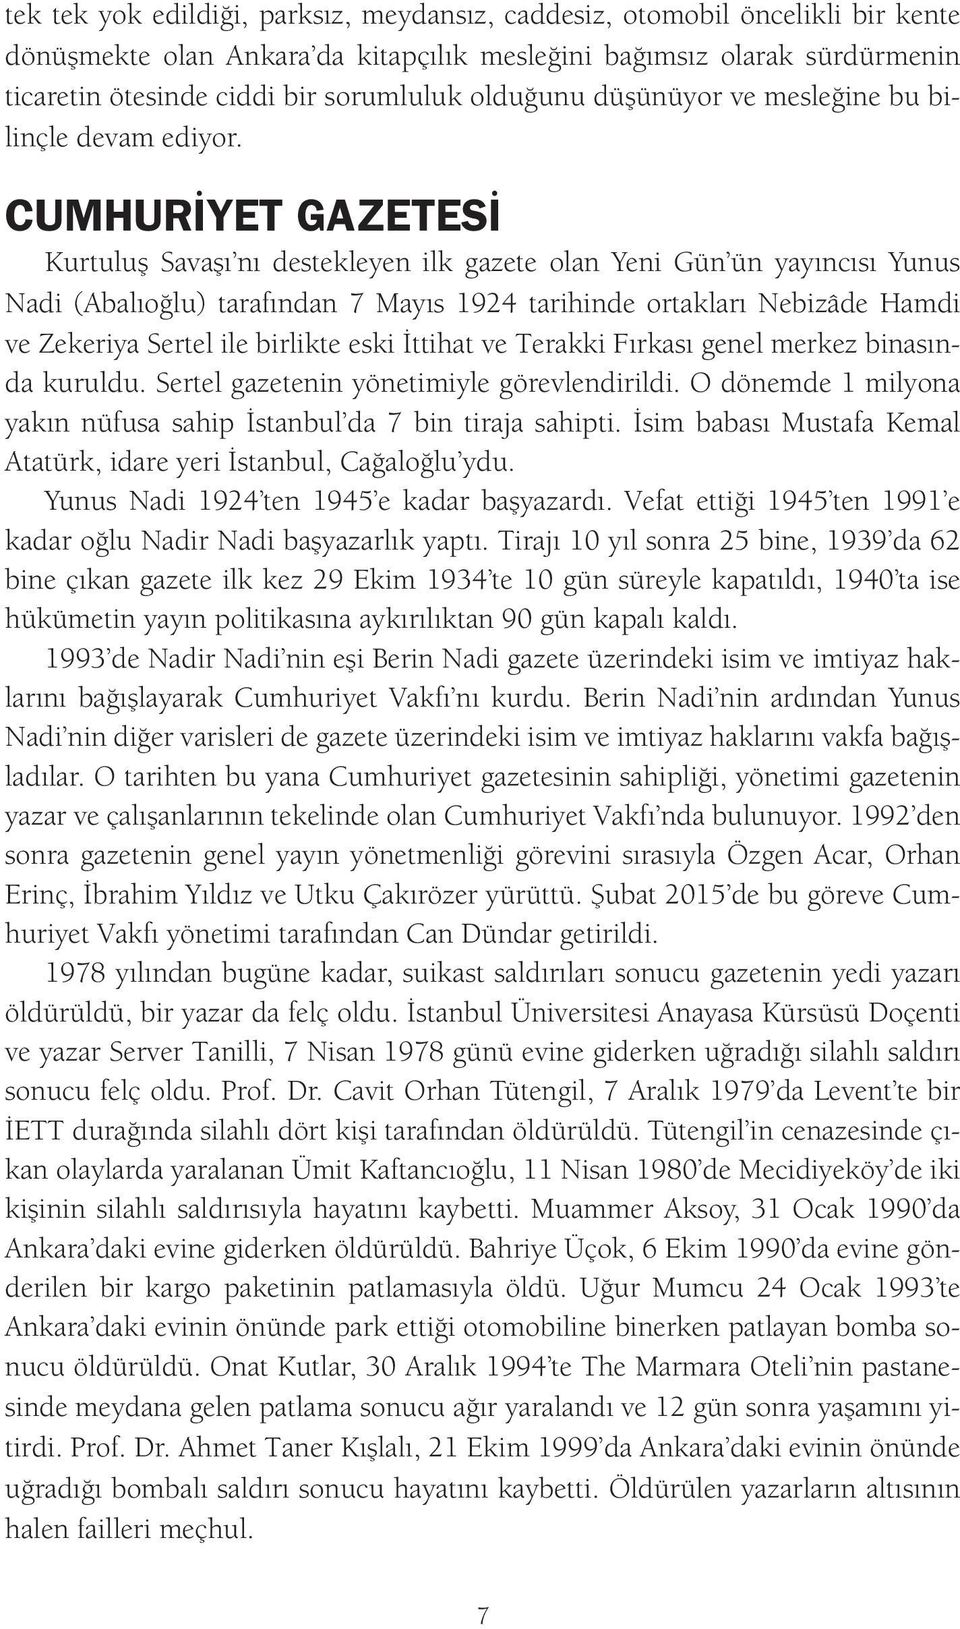 CUMHURİYET GAZETESİ Kurtuluş Savaşı nı destekleyen ilk gazete olan Yeni Gün ün yayıncısı Yunus Nadi (Abalıoğlu) tarafından 7 Mayıs 1924 tarihinde ortakları Nebizâde Hamdi ve Zekeriya Sertel ile